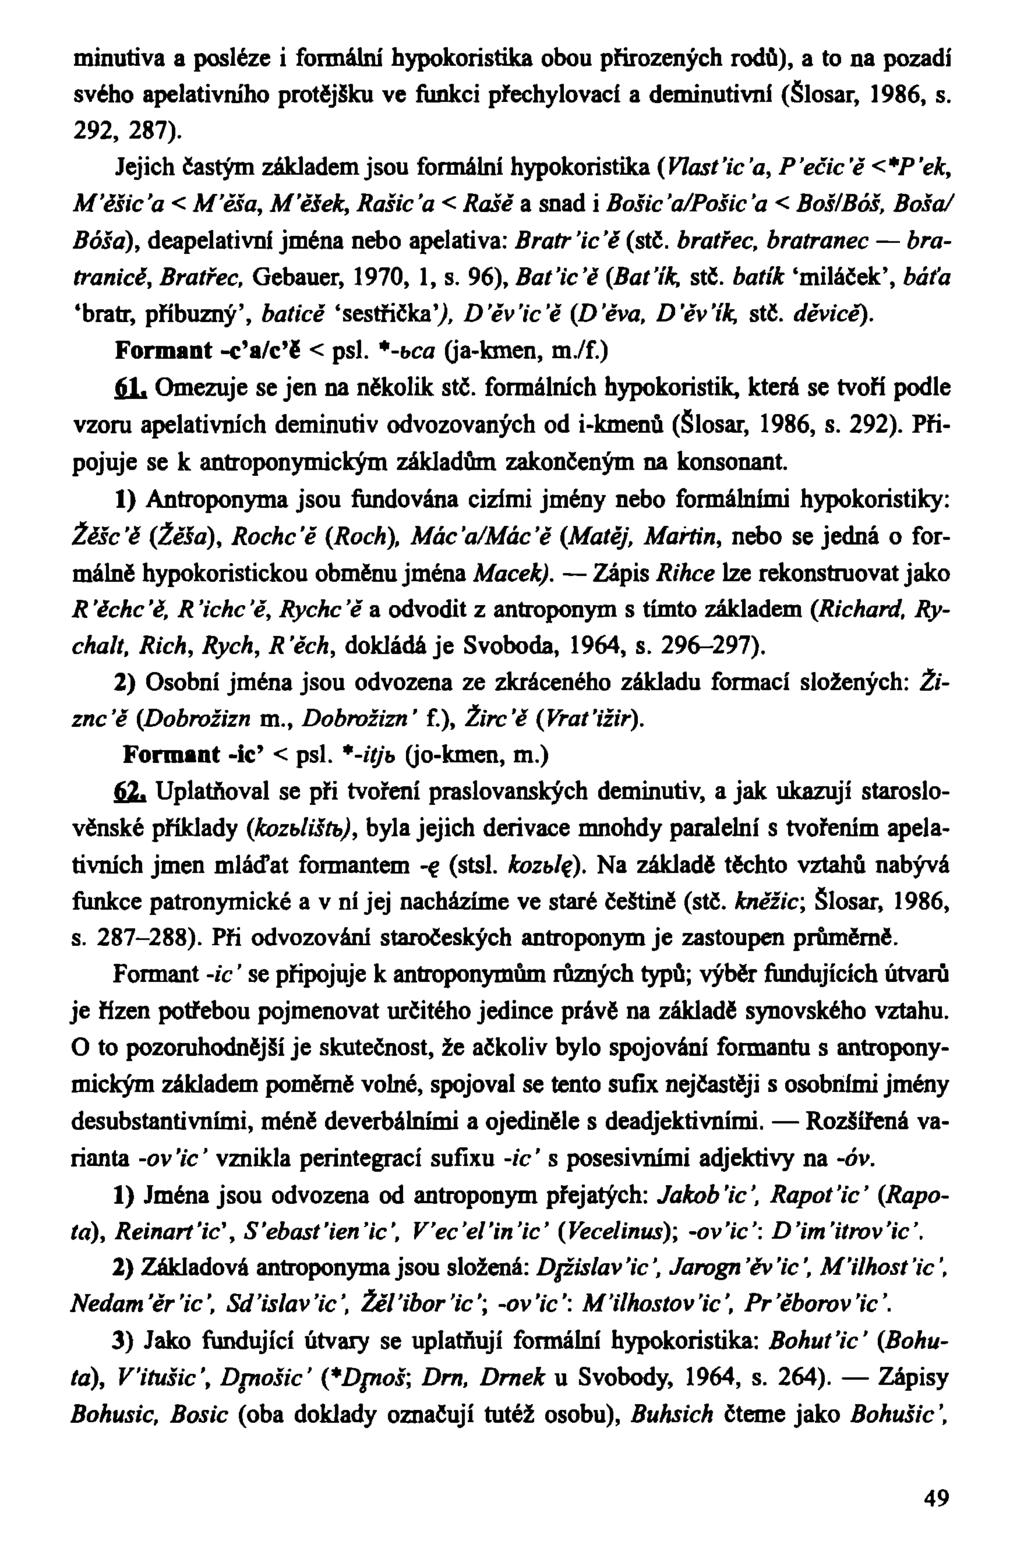 minutiva a posléze i formální hypokoristika obou přirozených rodů), a to na pozadí svého apelativního protějšku ve funkci přechylovací a deminutivni (Šlosar, 1986, s. 292, 287).